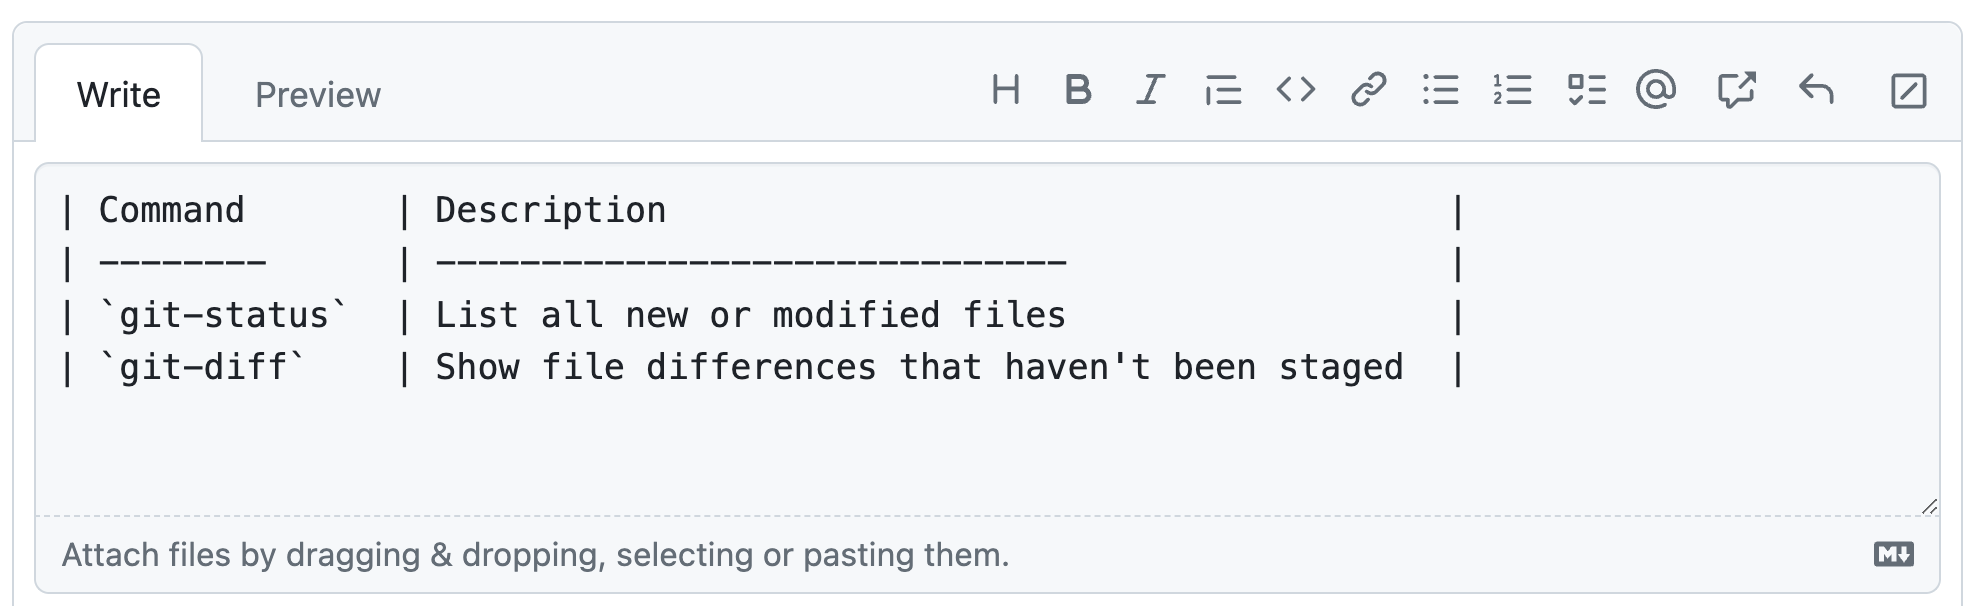 固定幅フォントを有効にした GitHub Enterprise Cloud のコメント フィールドを示すスクリーンショット